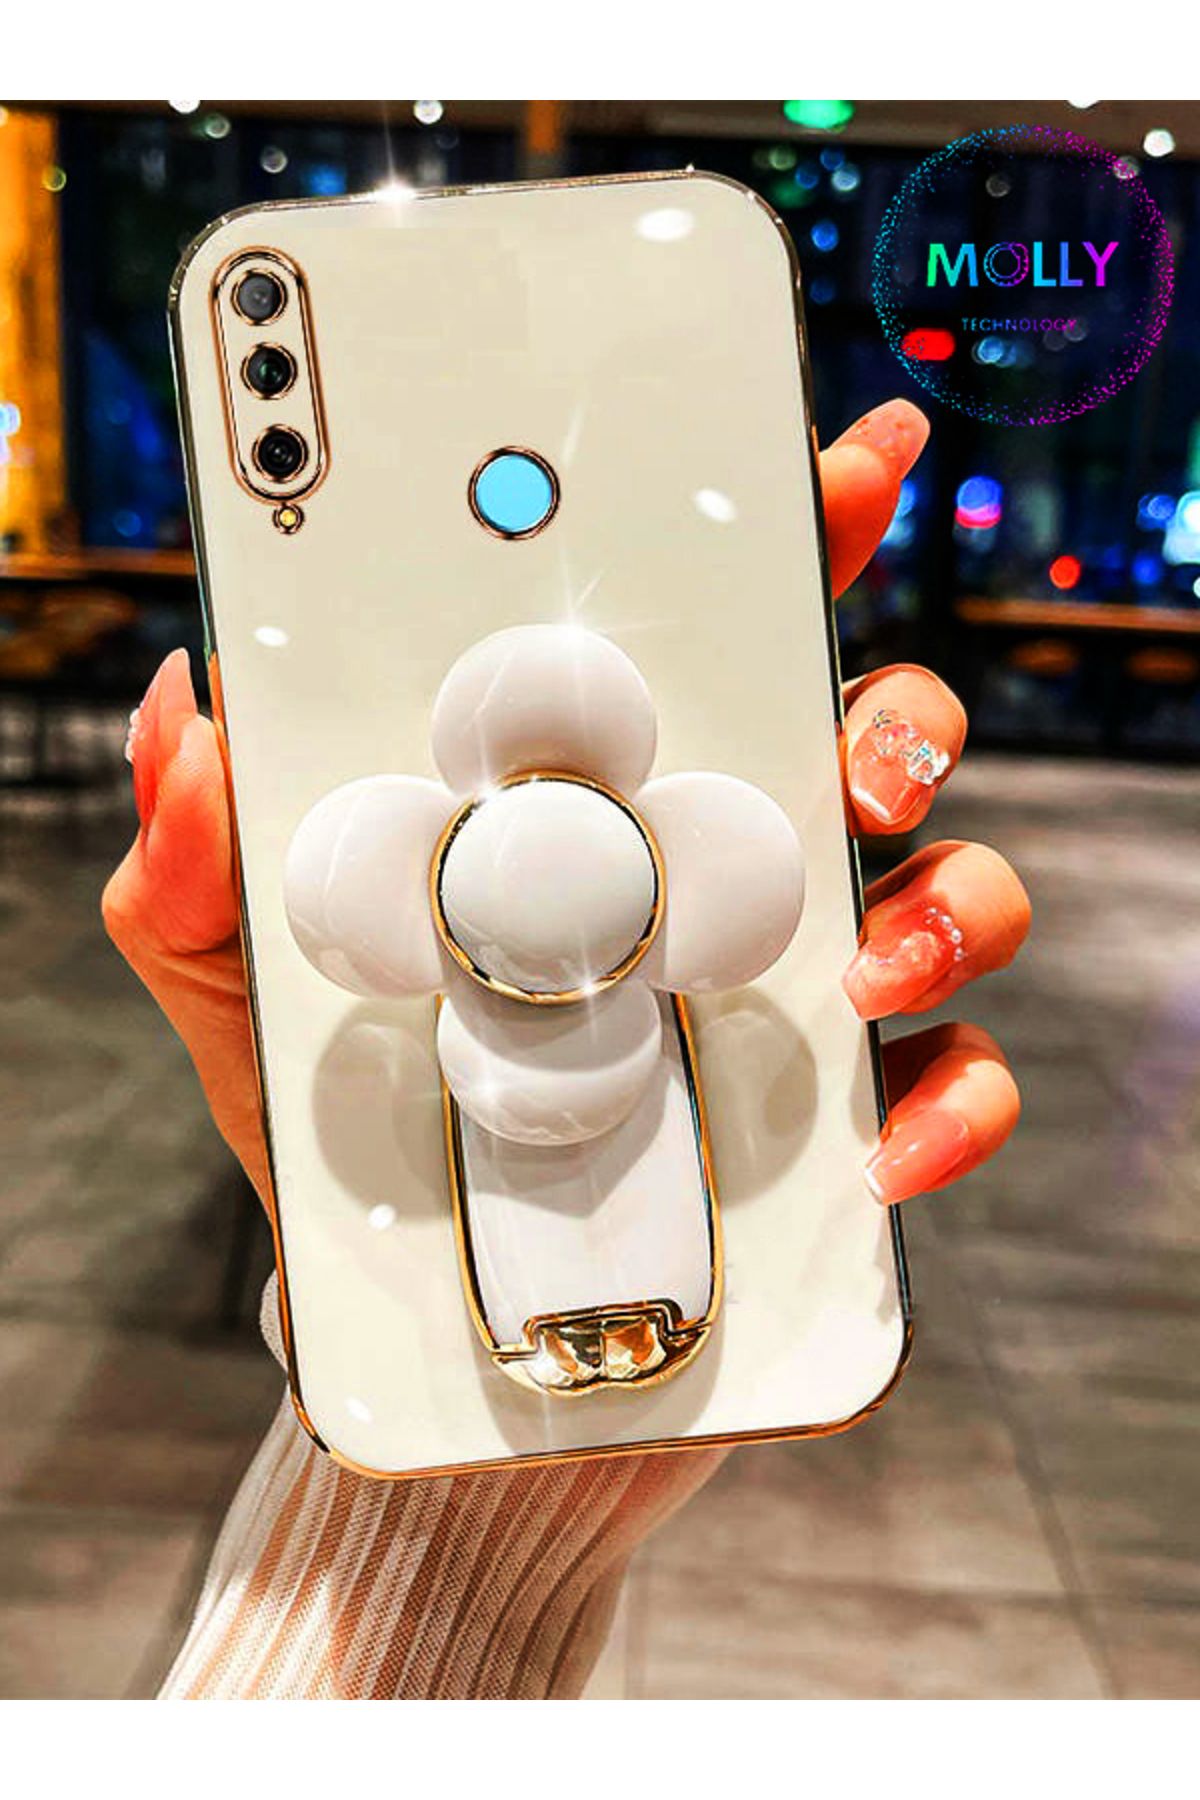 Molly Huawei Y9 PRİME 2019 İçin İnci Beyazı Şans Yoncası Standlı Kenarları Gold Detaylı Lüks Silikon Kılıf